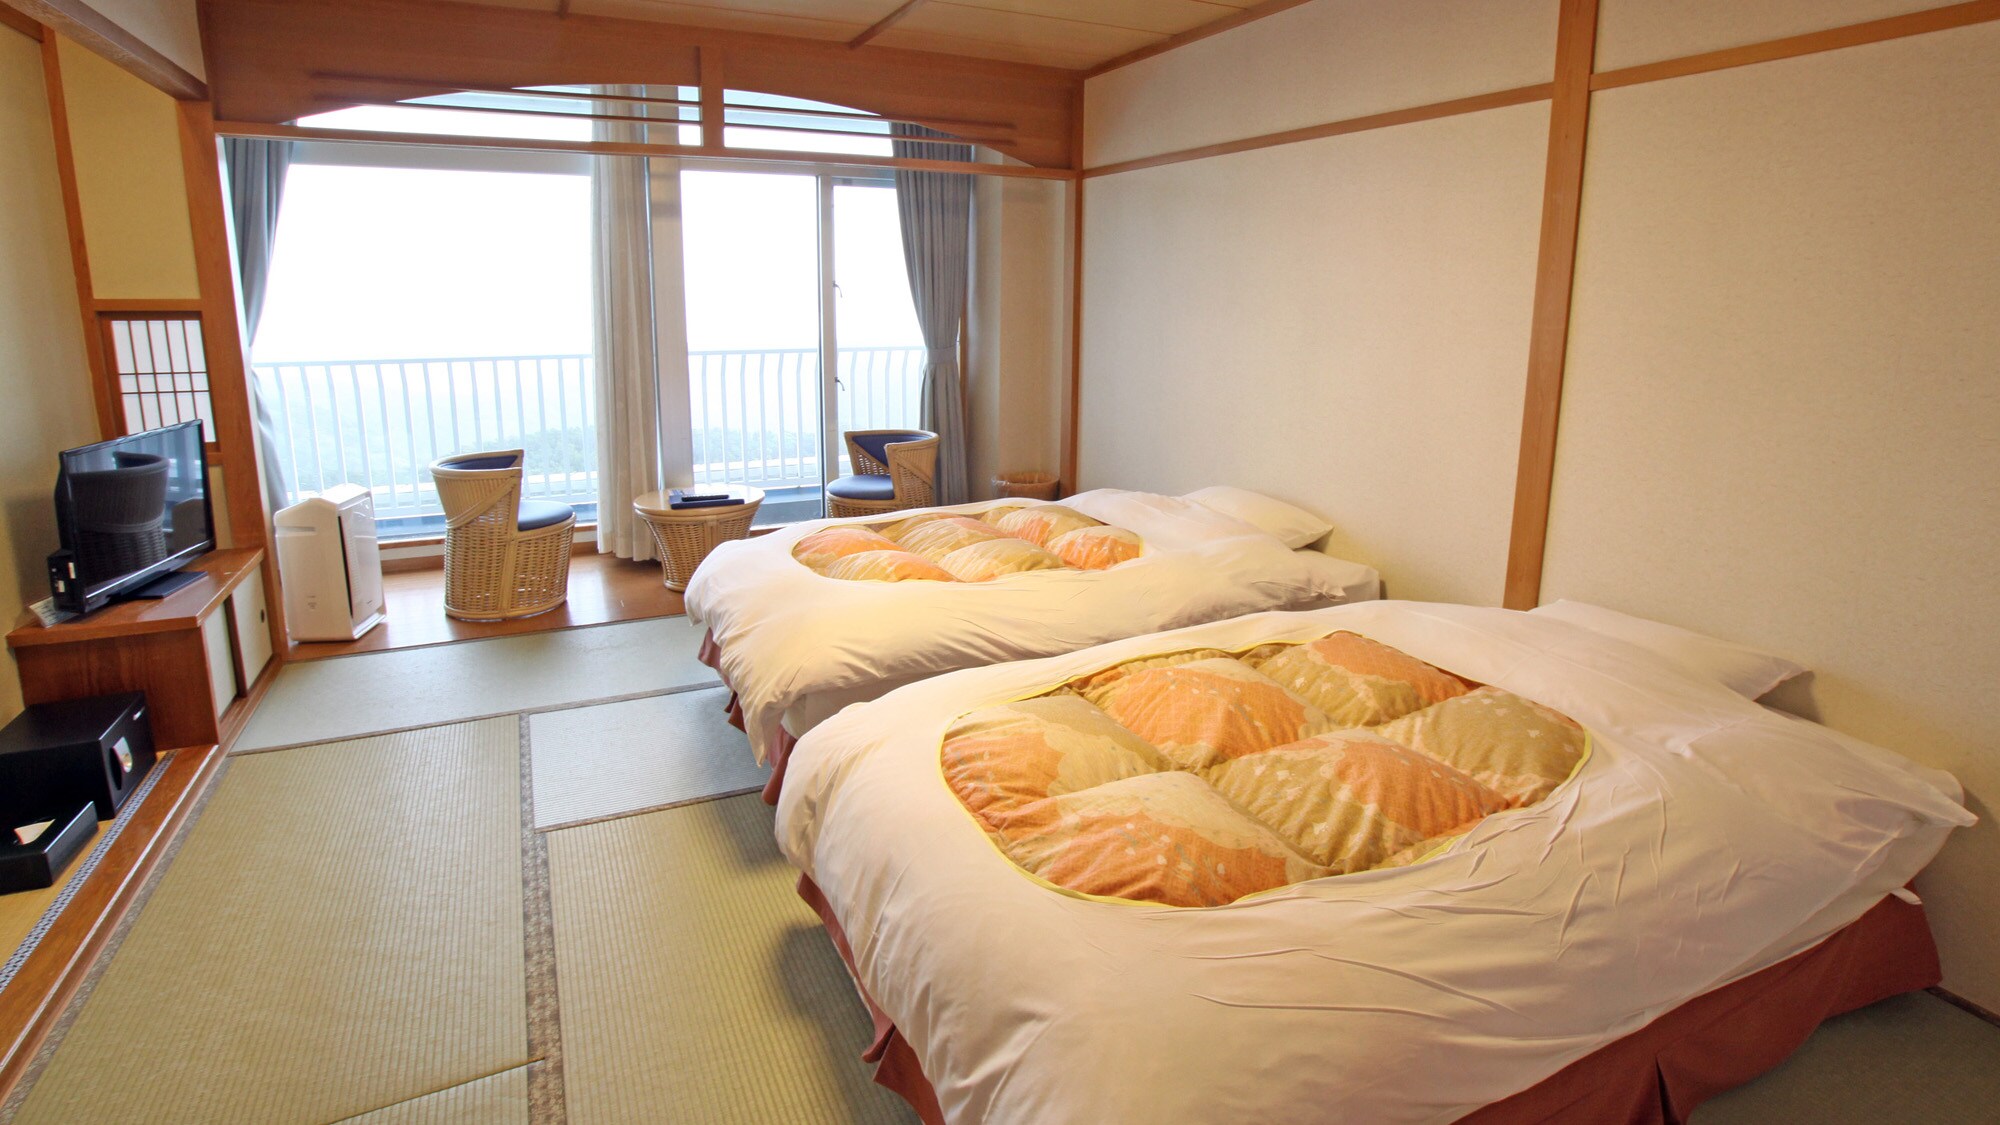 ห้องสไตล์ญี่ปุ่น + 2 ห้องนอนพร้อมห้องน้ำ